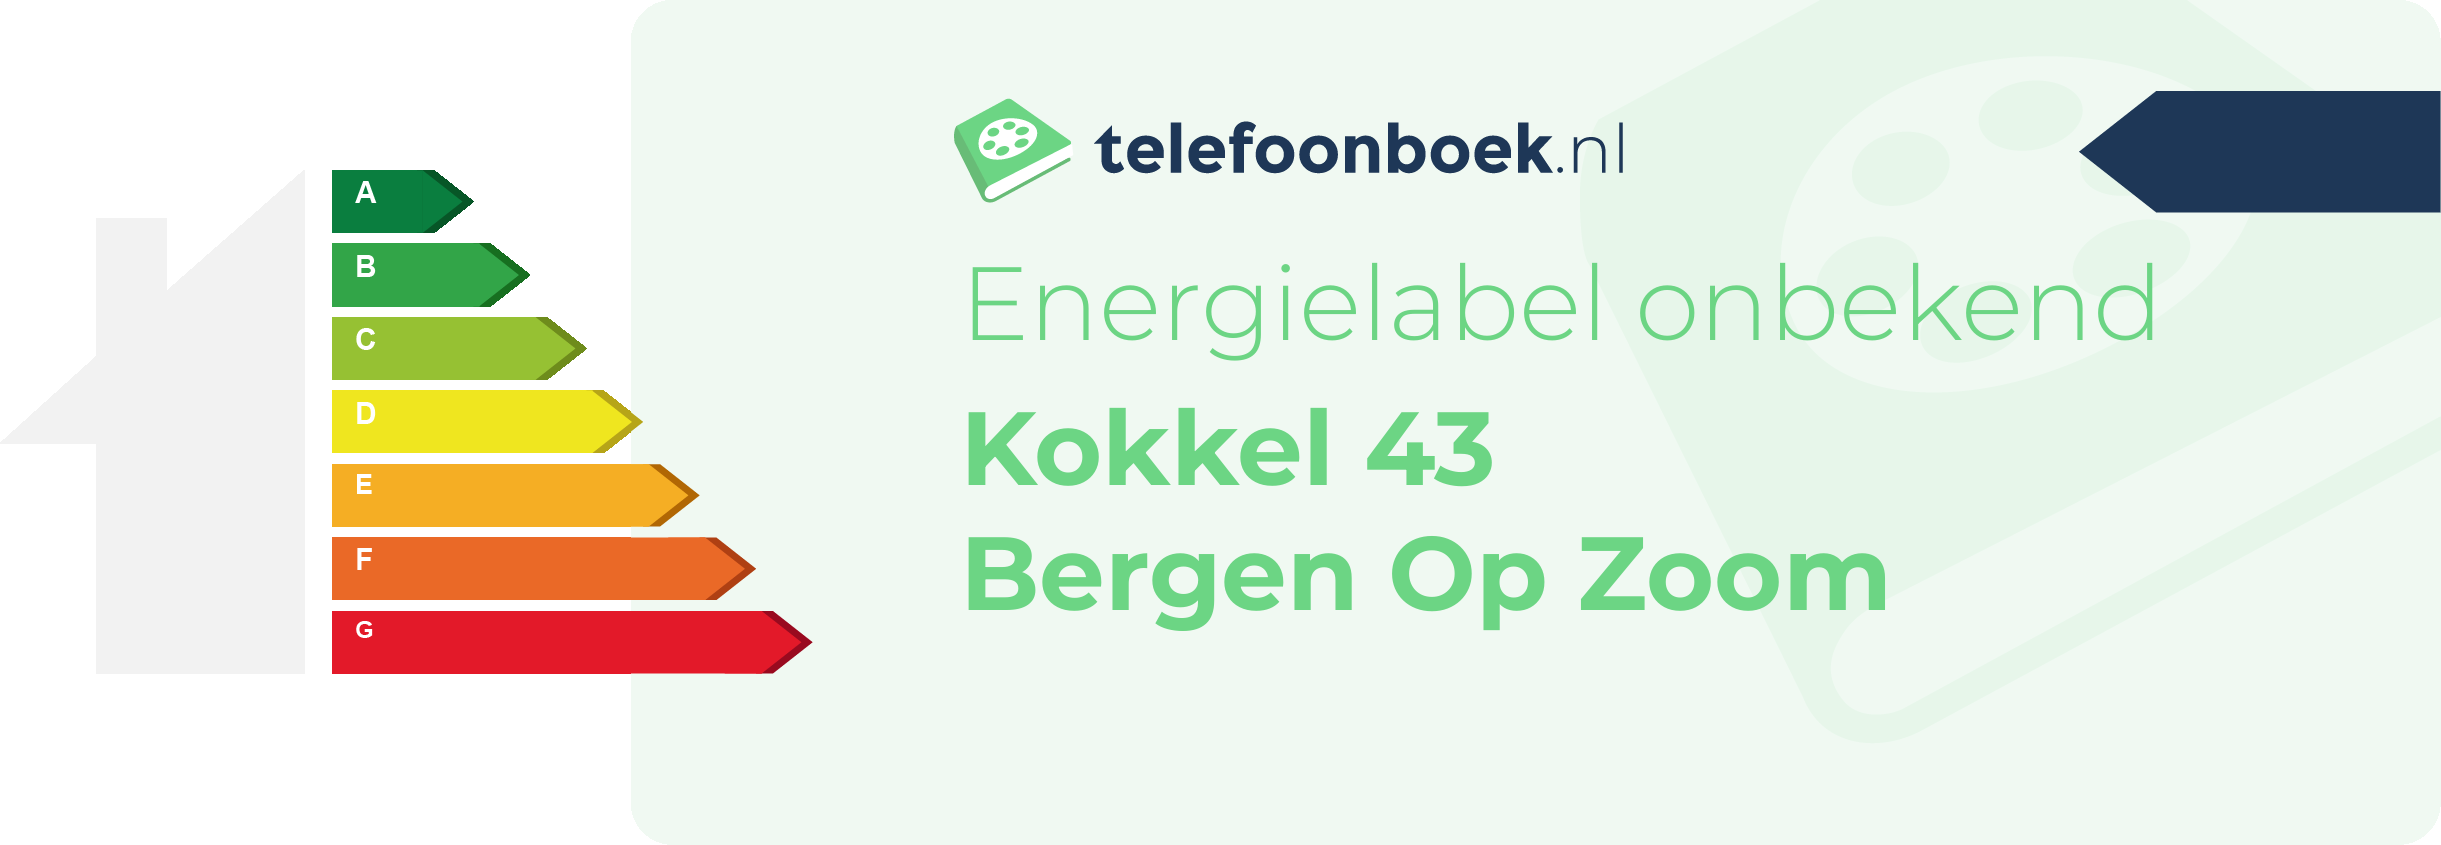 Energielabel Kokkel 43 Bergen Op Zoom